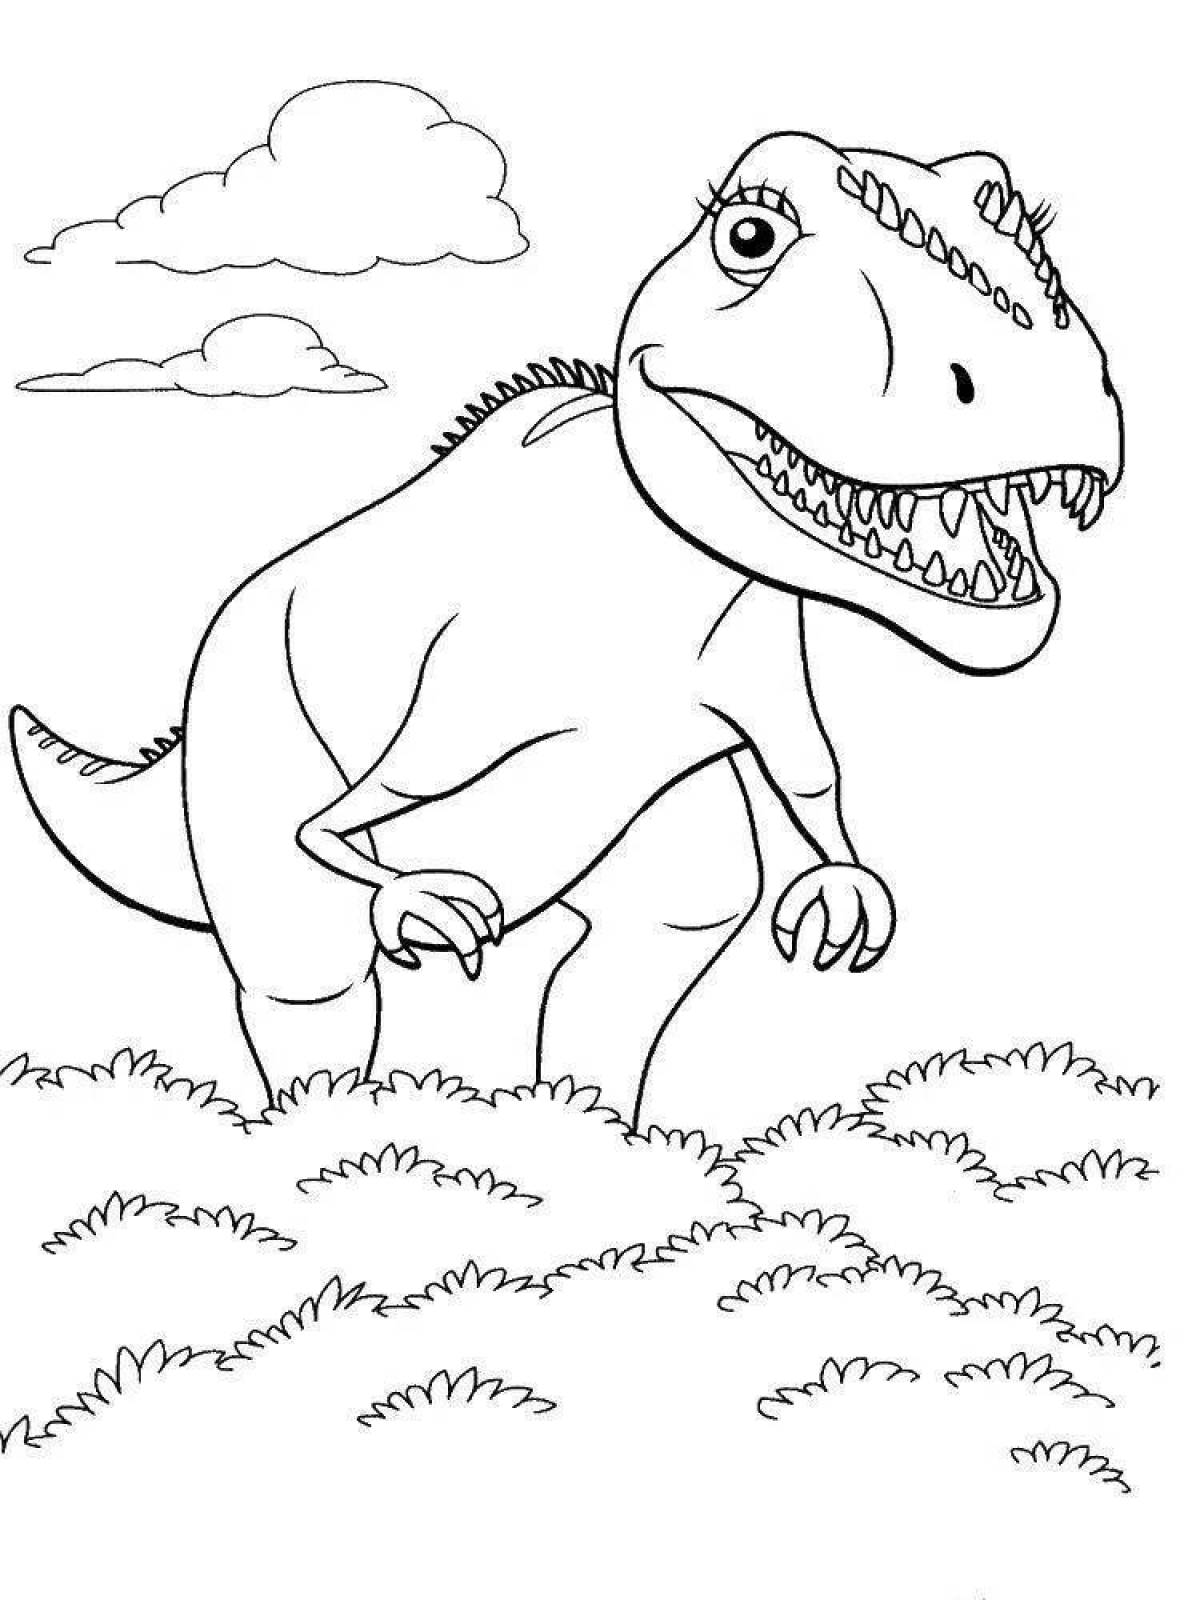 Динозавр раскраска распечатать а4. Поезд динозавров Тираннозавр раскраска. Тарбозавр раскраска динозавра. Динозавры / раскраска. Динозавр раскраска для детей.